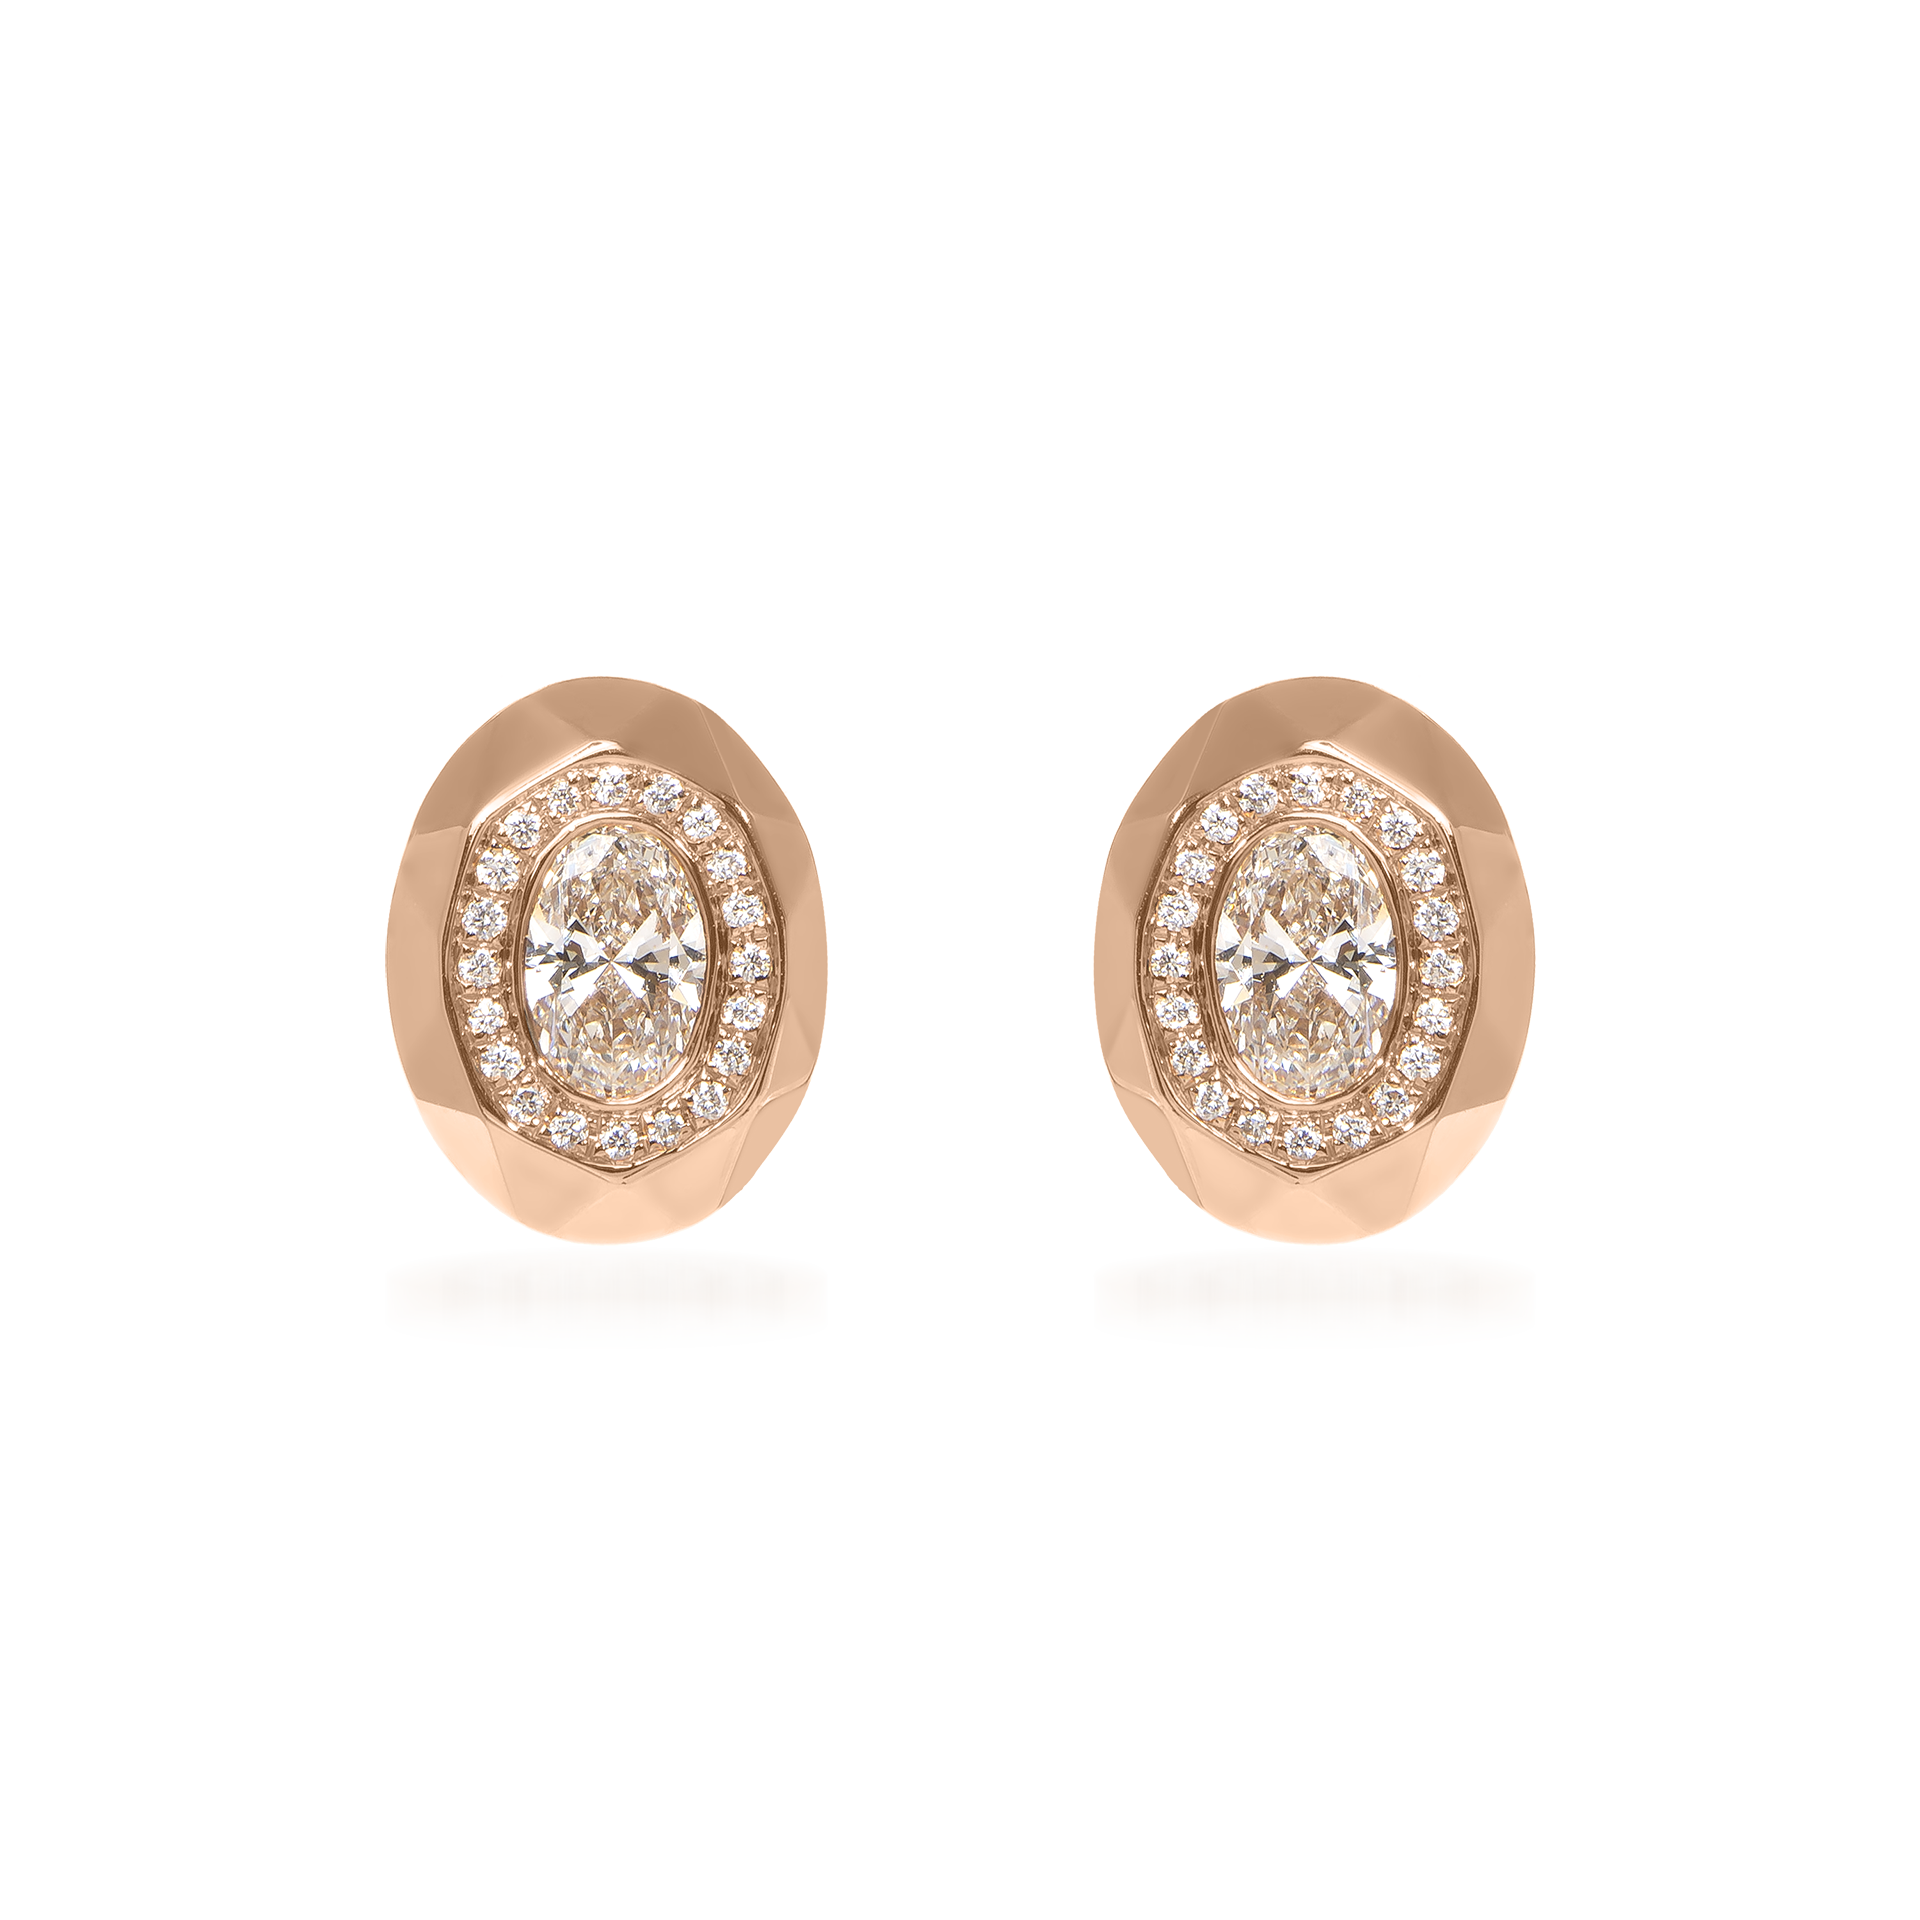 Metropolitan Oval-Cut Diamond Halo Earrings In 18K Rose Gold